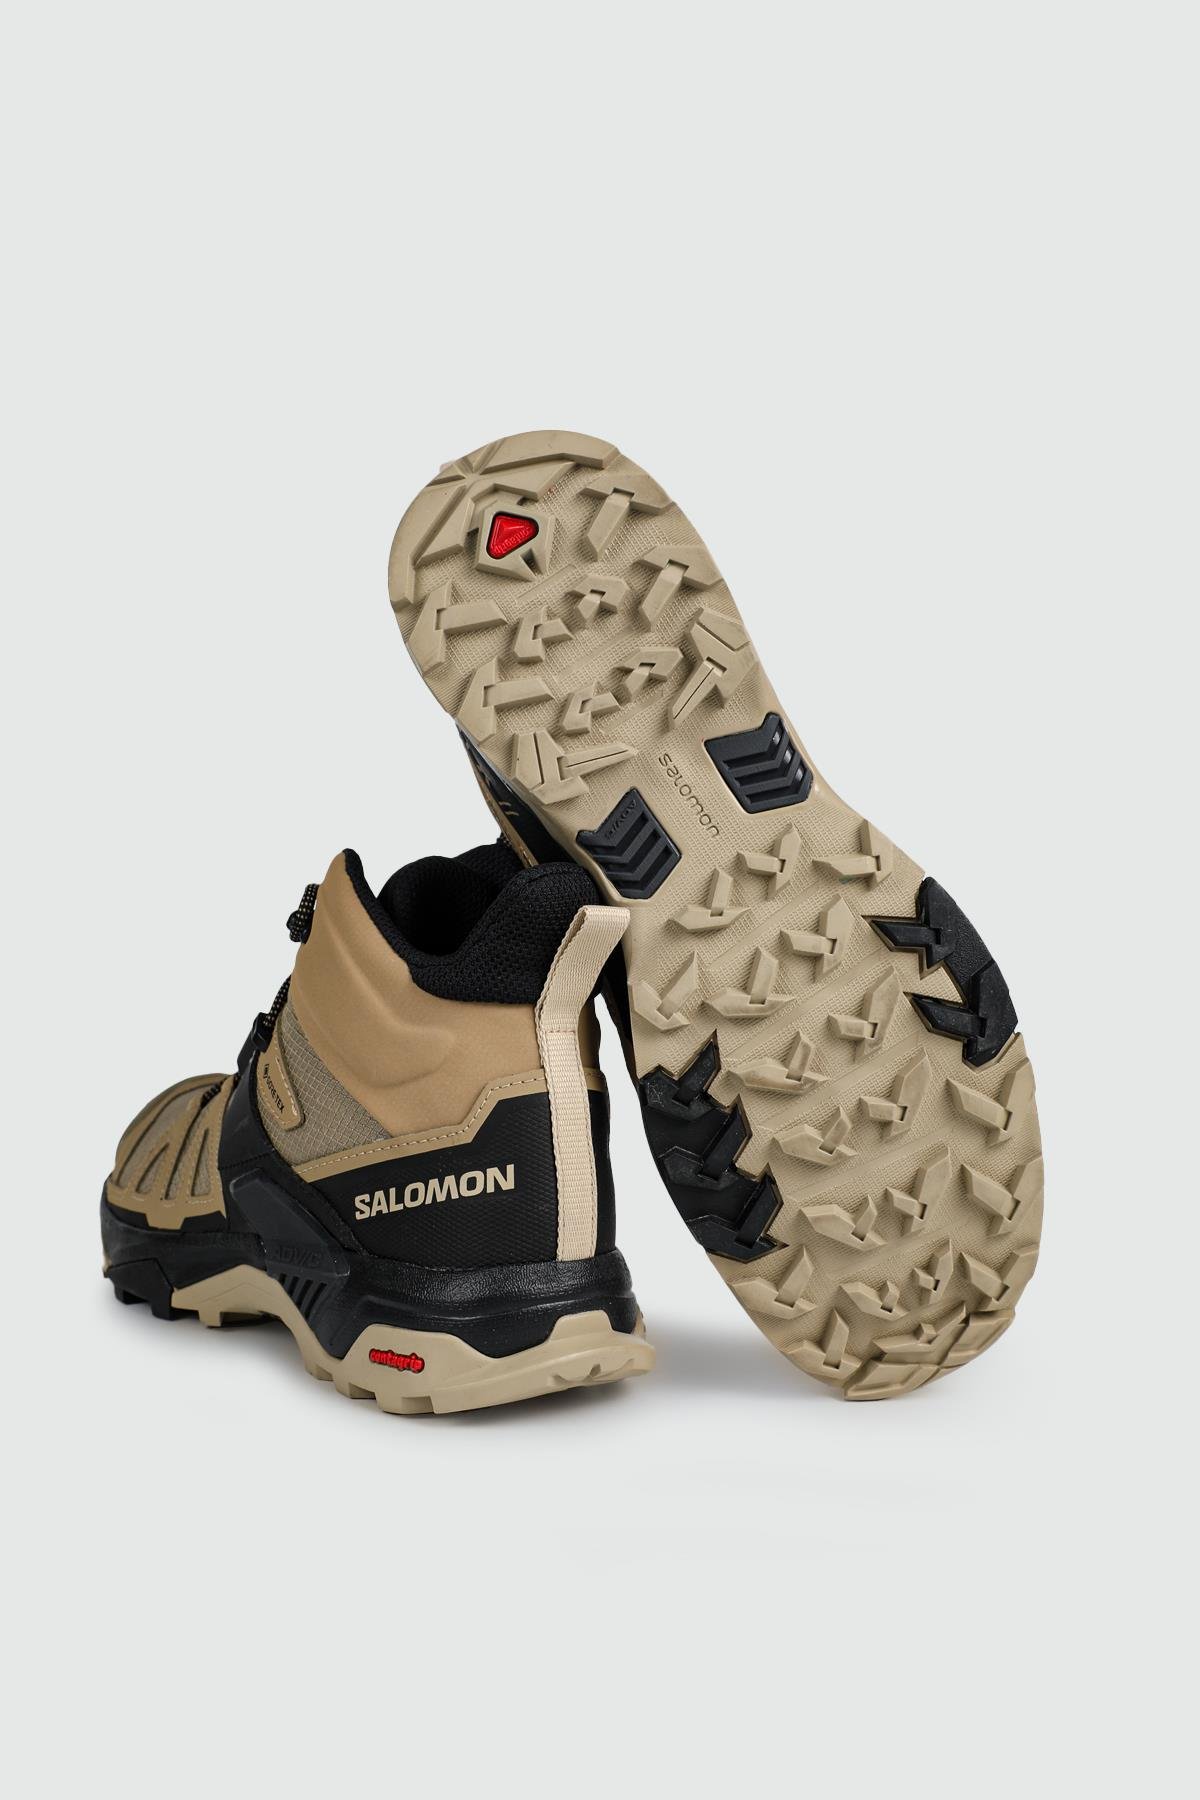 Salomon Outdoor Su Geçirmez Kelp/Black/SAFARI Erkek Spor Ayakkabı L41294100  | Ayakkabı City